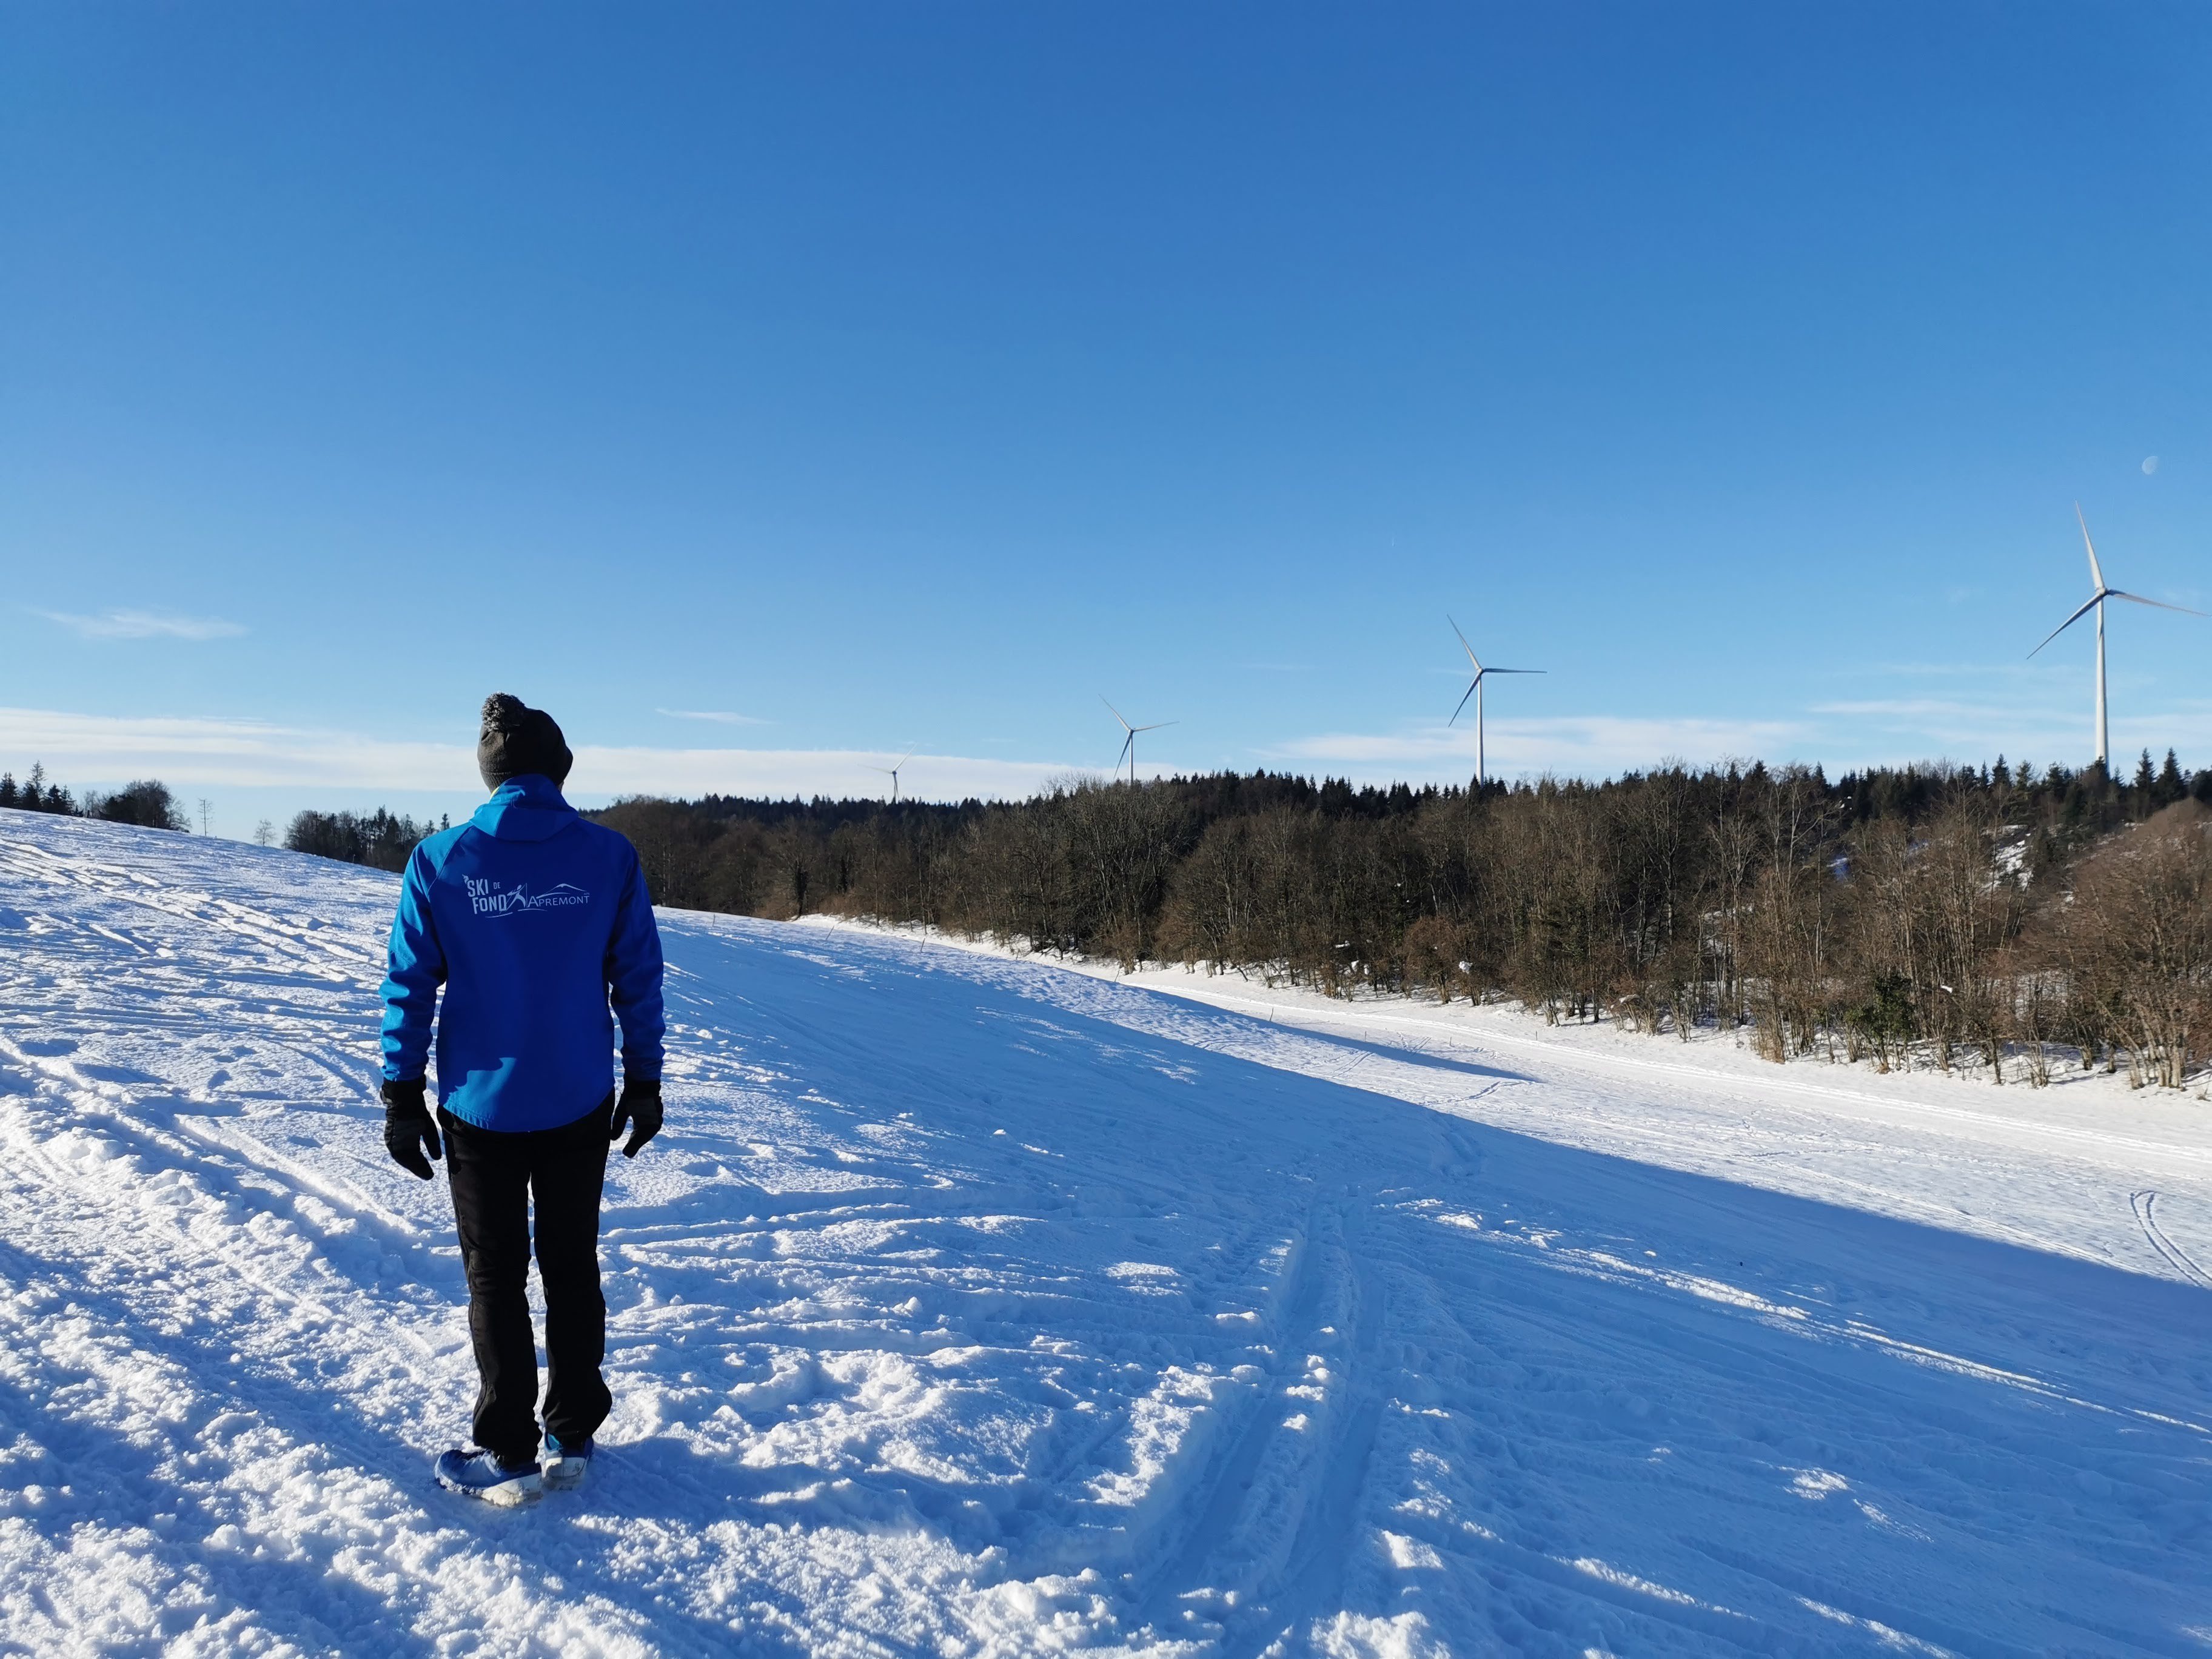 Les Prés d’en Haut - Piste verte de ski nordique